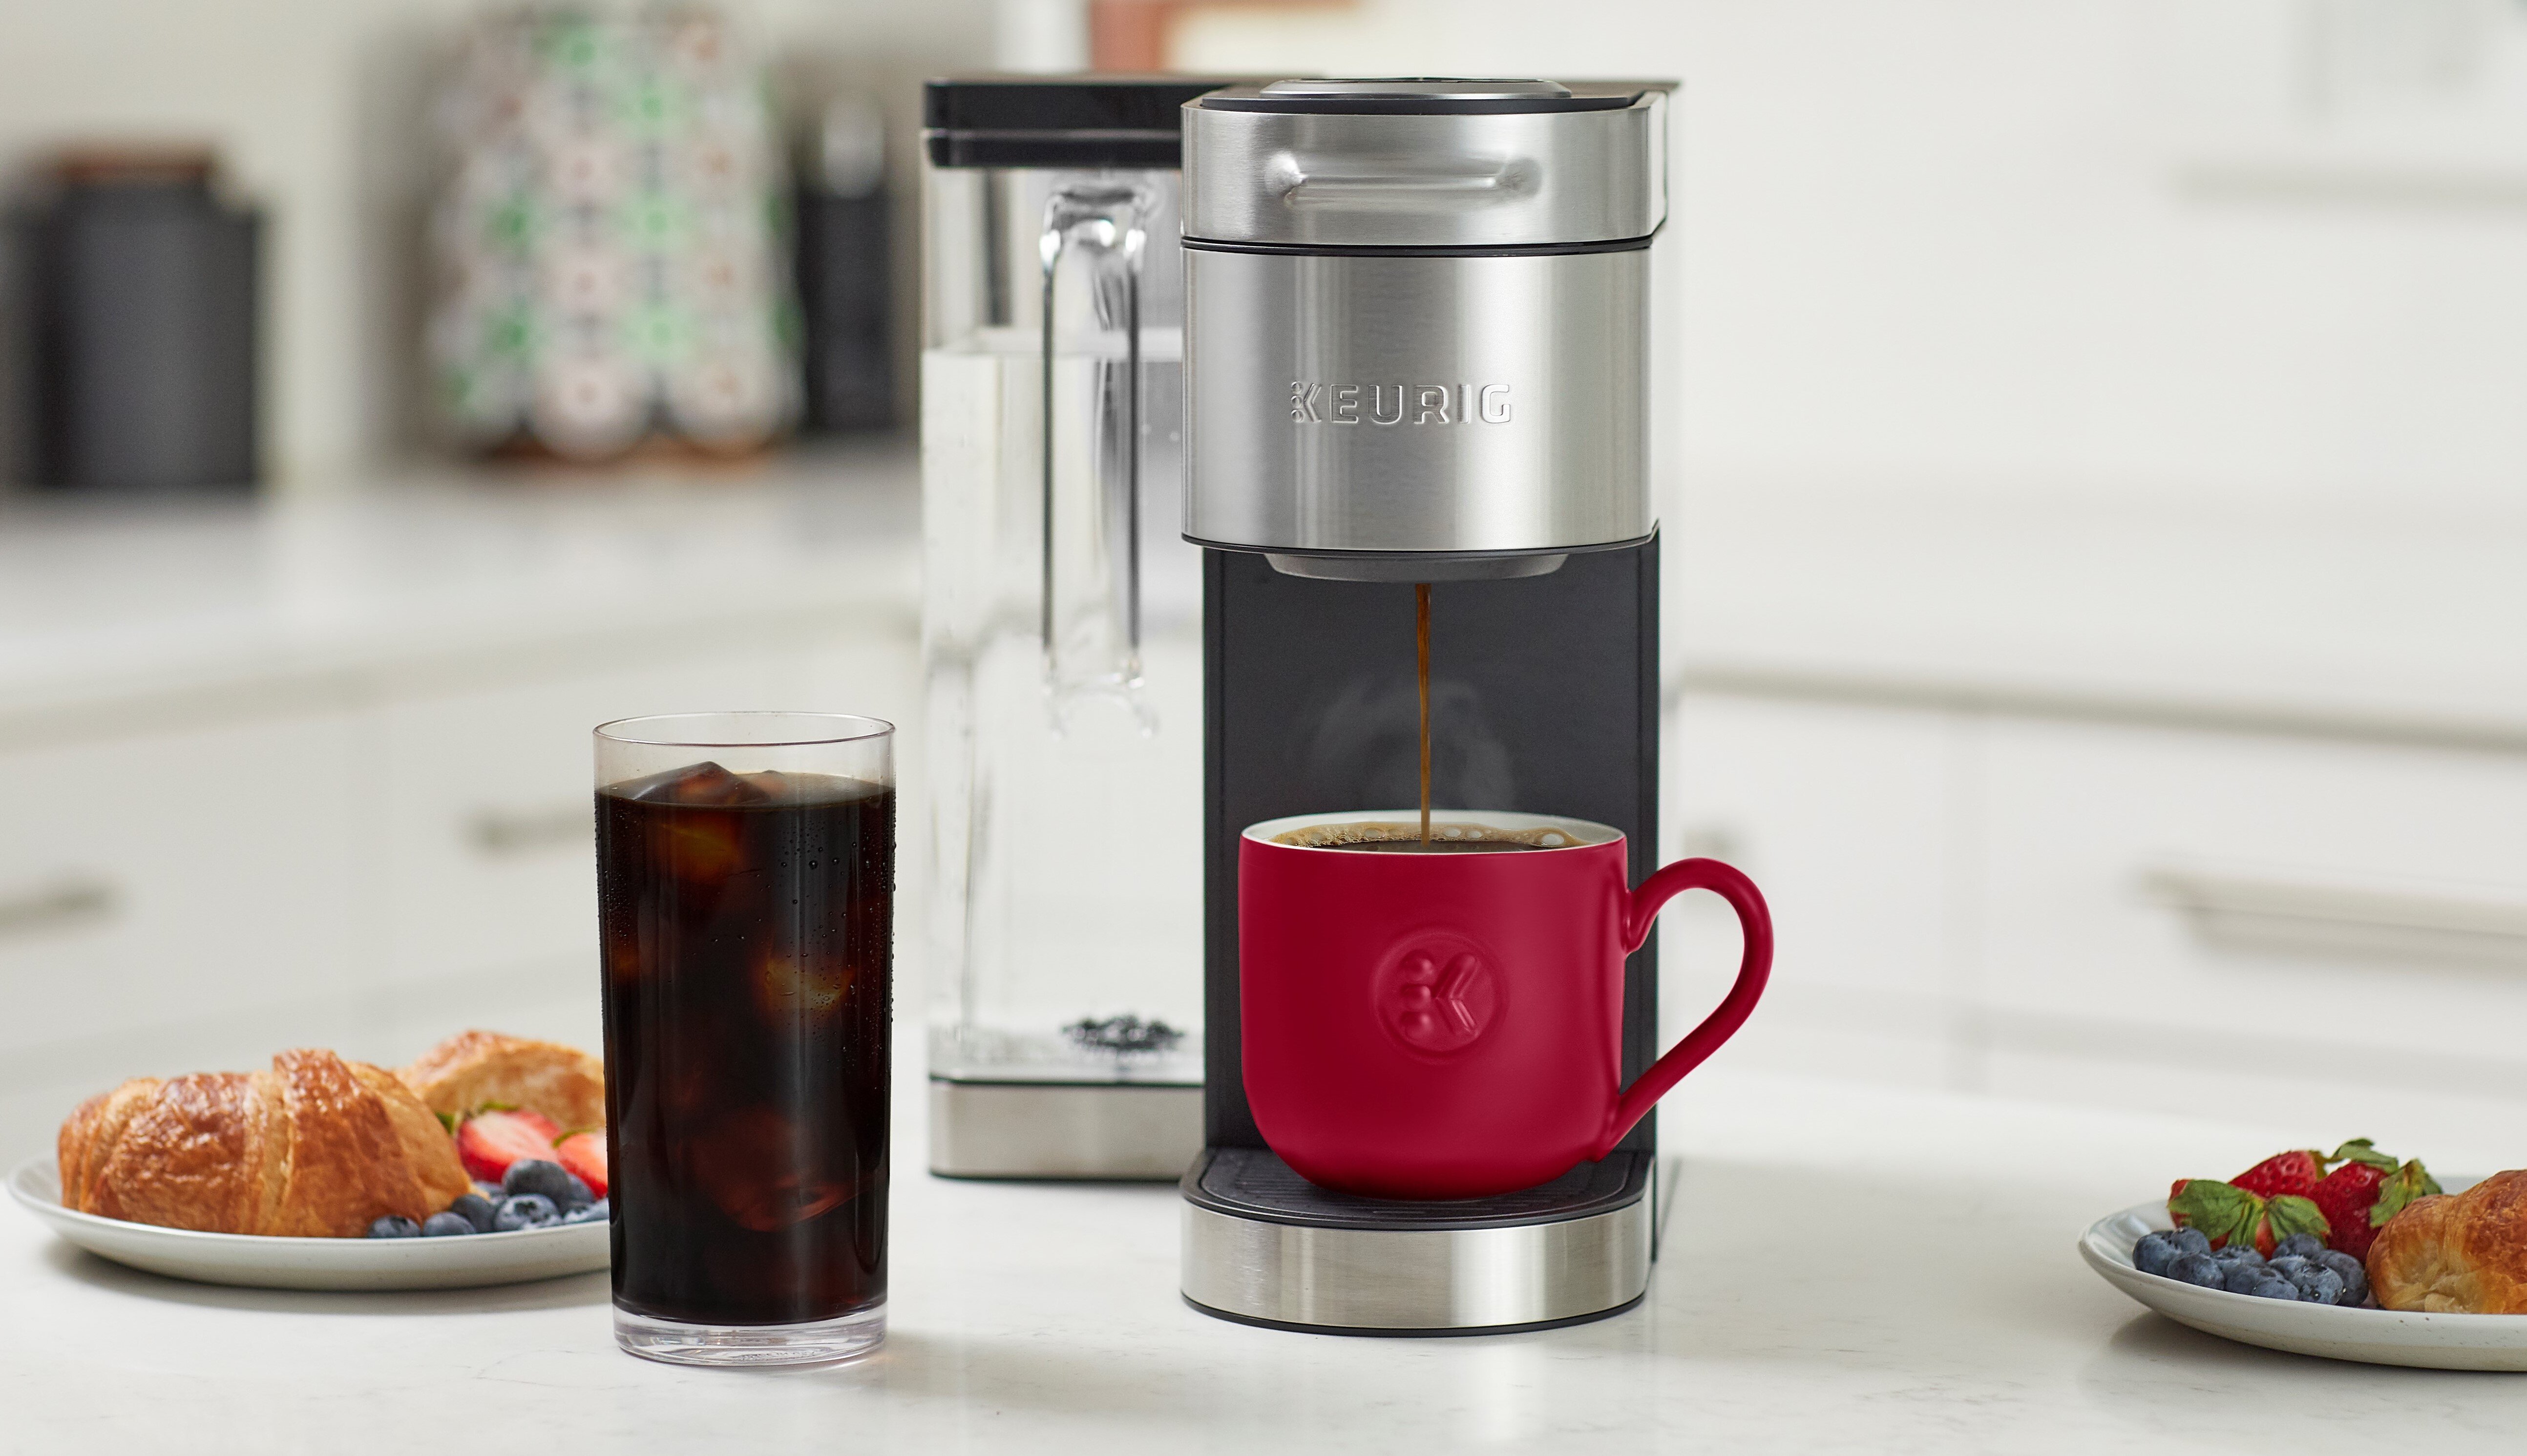 STARBUCKS COFFEE K Cup COMPARISON Keurig K-Slim Coffee Maker TASTE TEST 6  DIFFERENT COFFEE K CUPS 